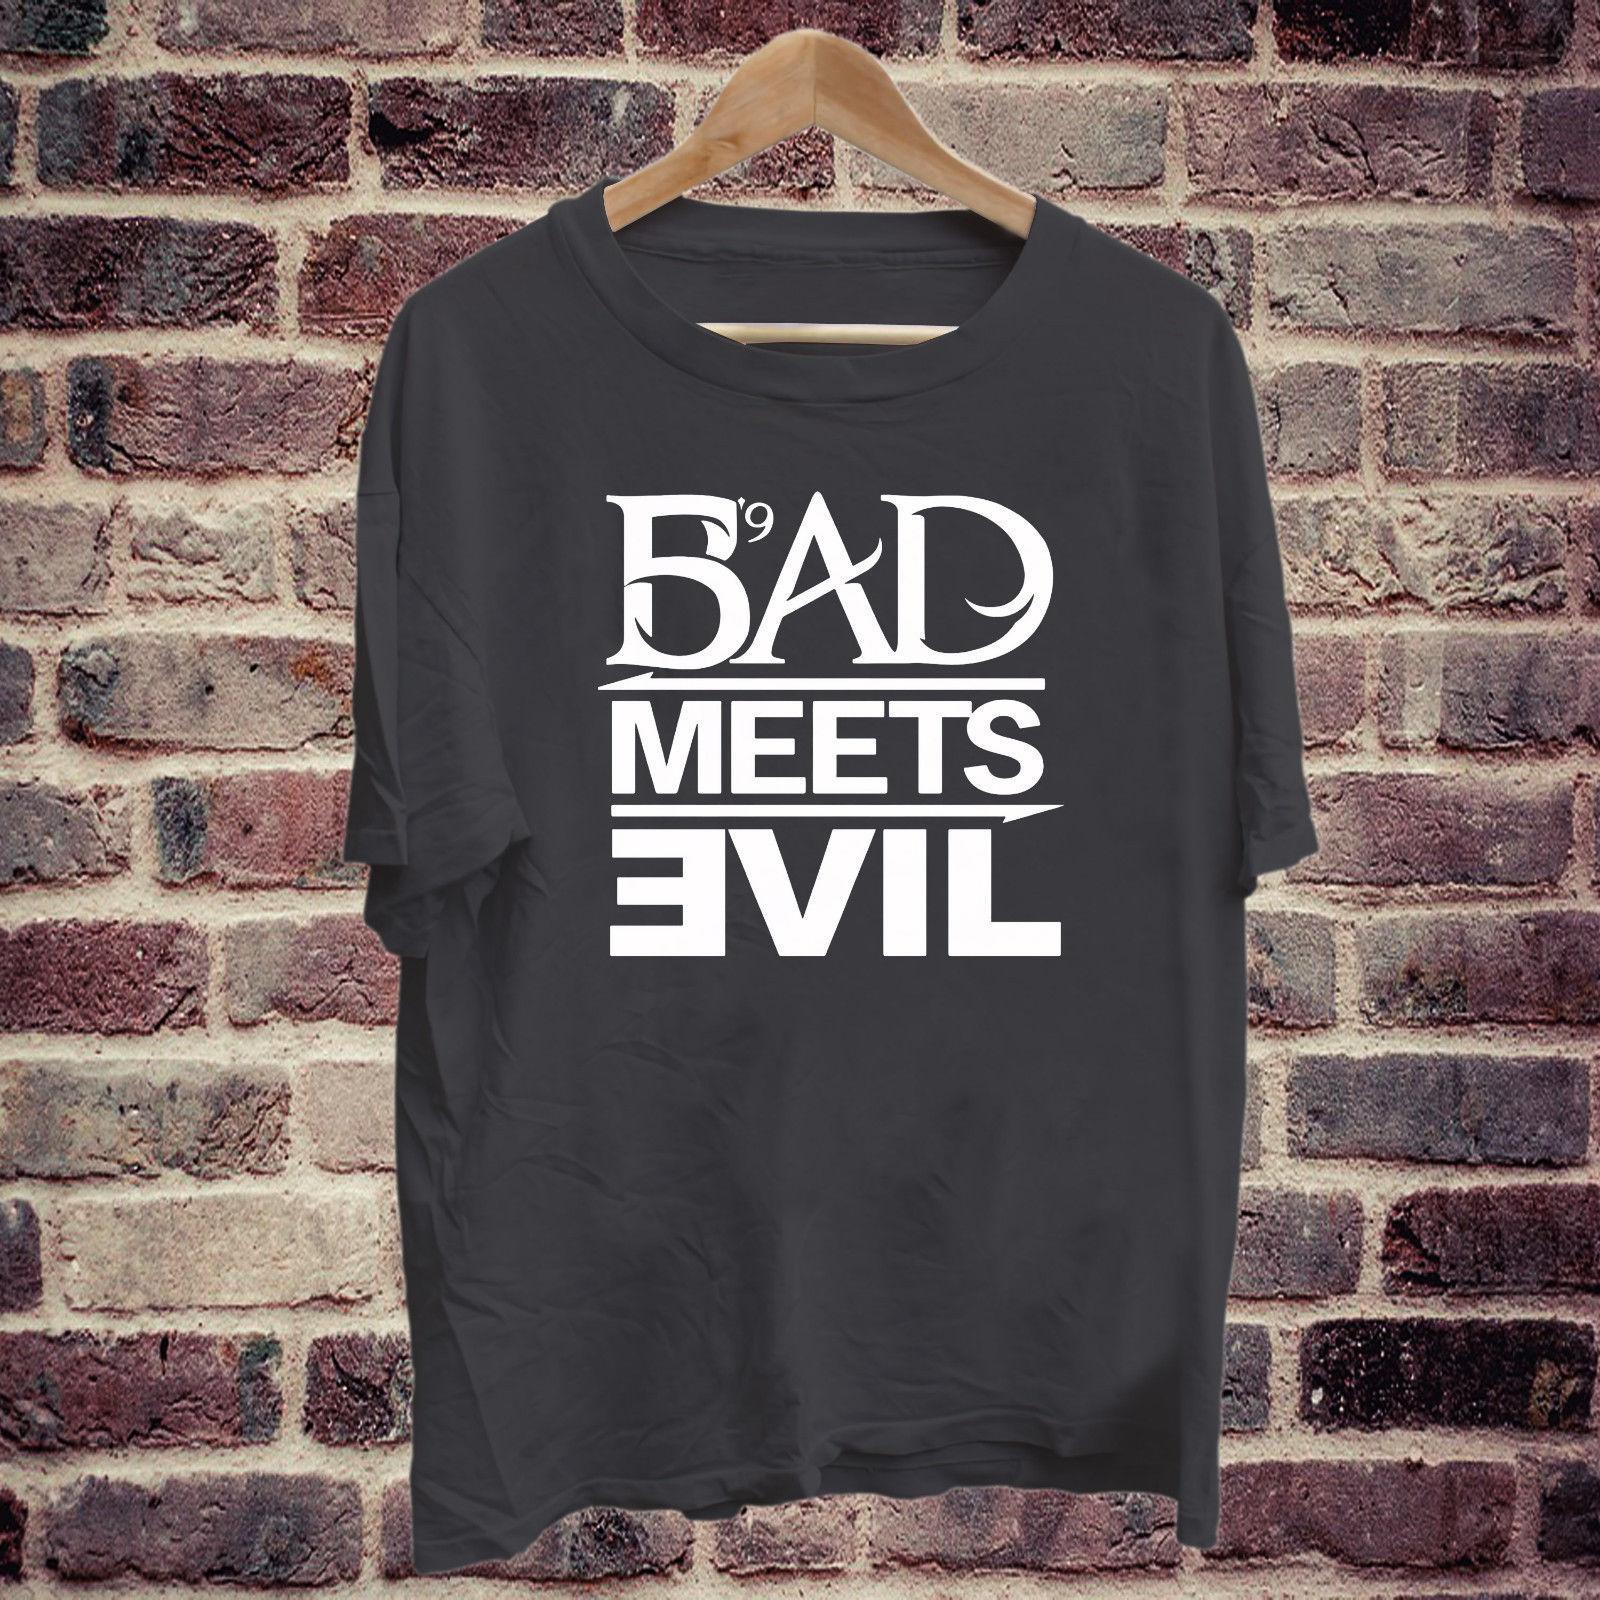 T-Shirt Square Logo - Eminem Bad Meets Evil Square Logo Black T Shirt Tee S 2XL Short ...